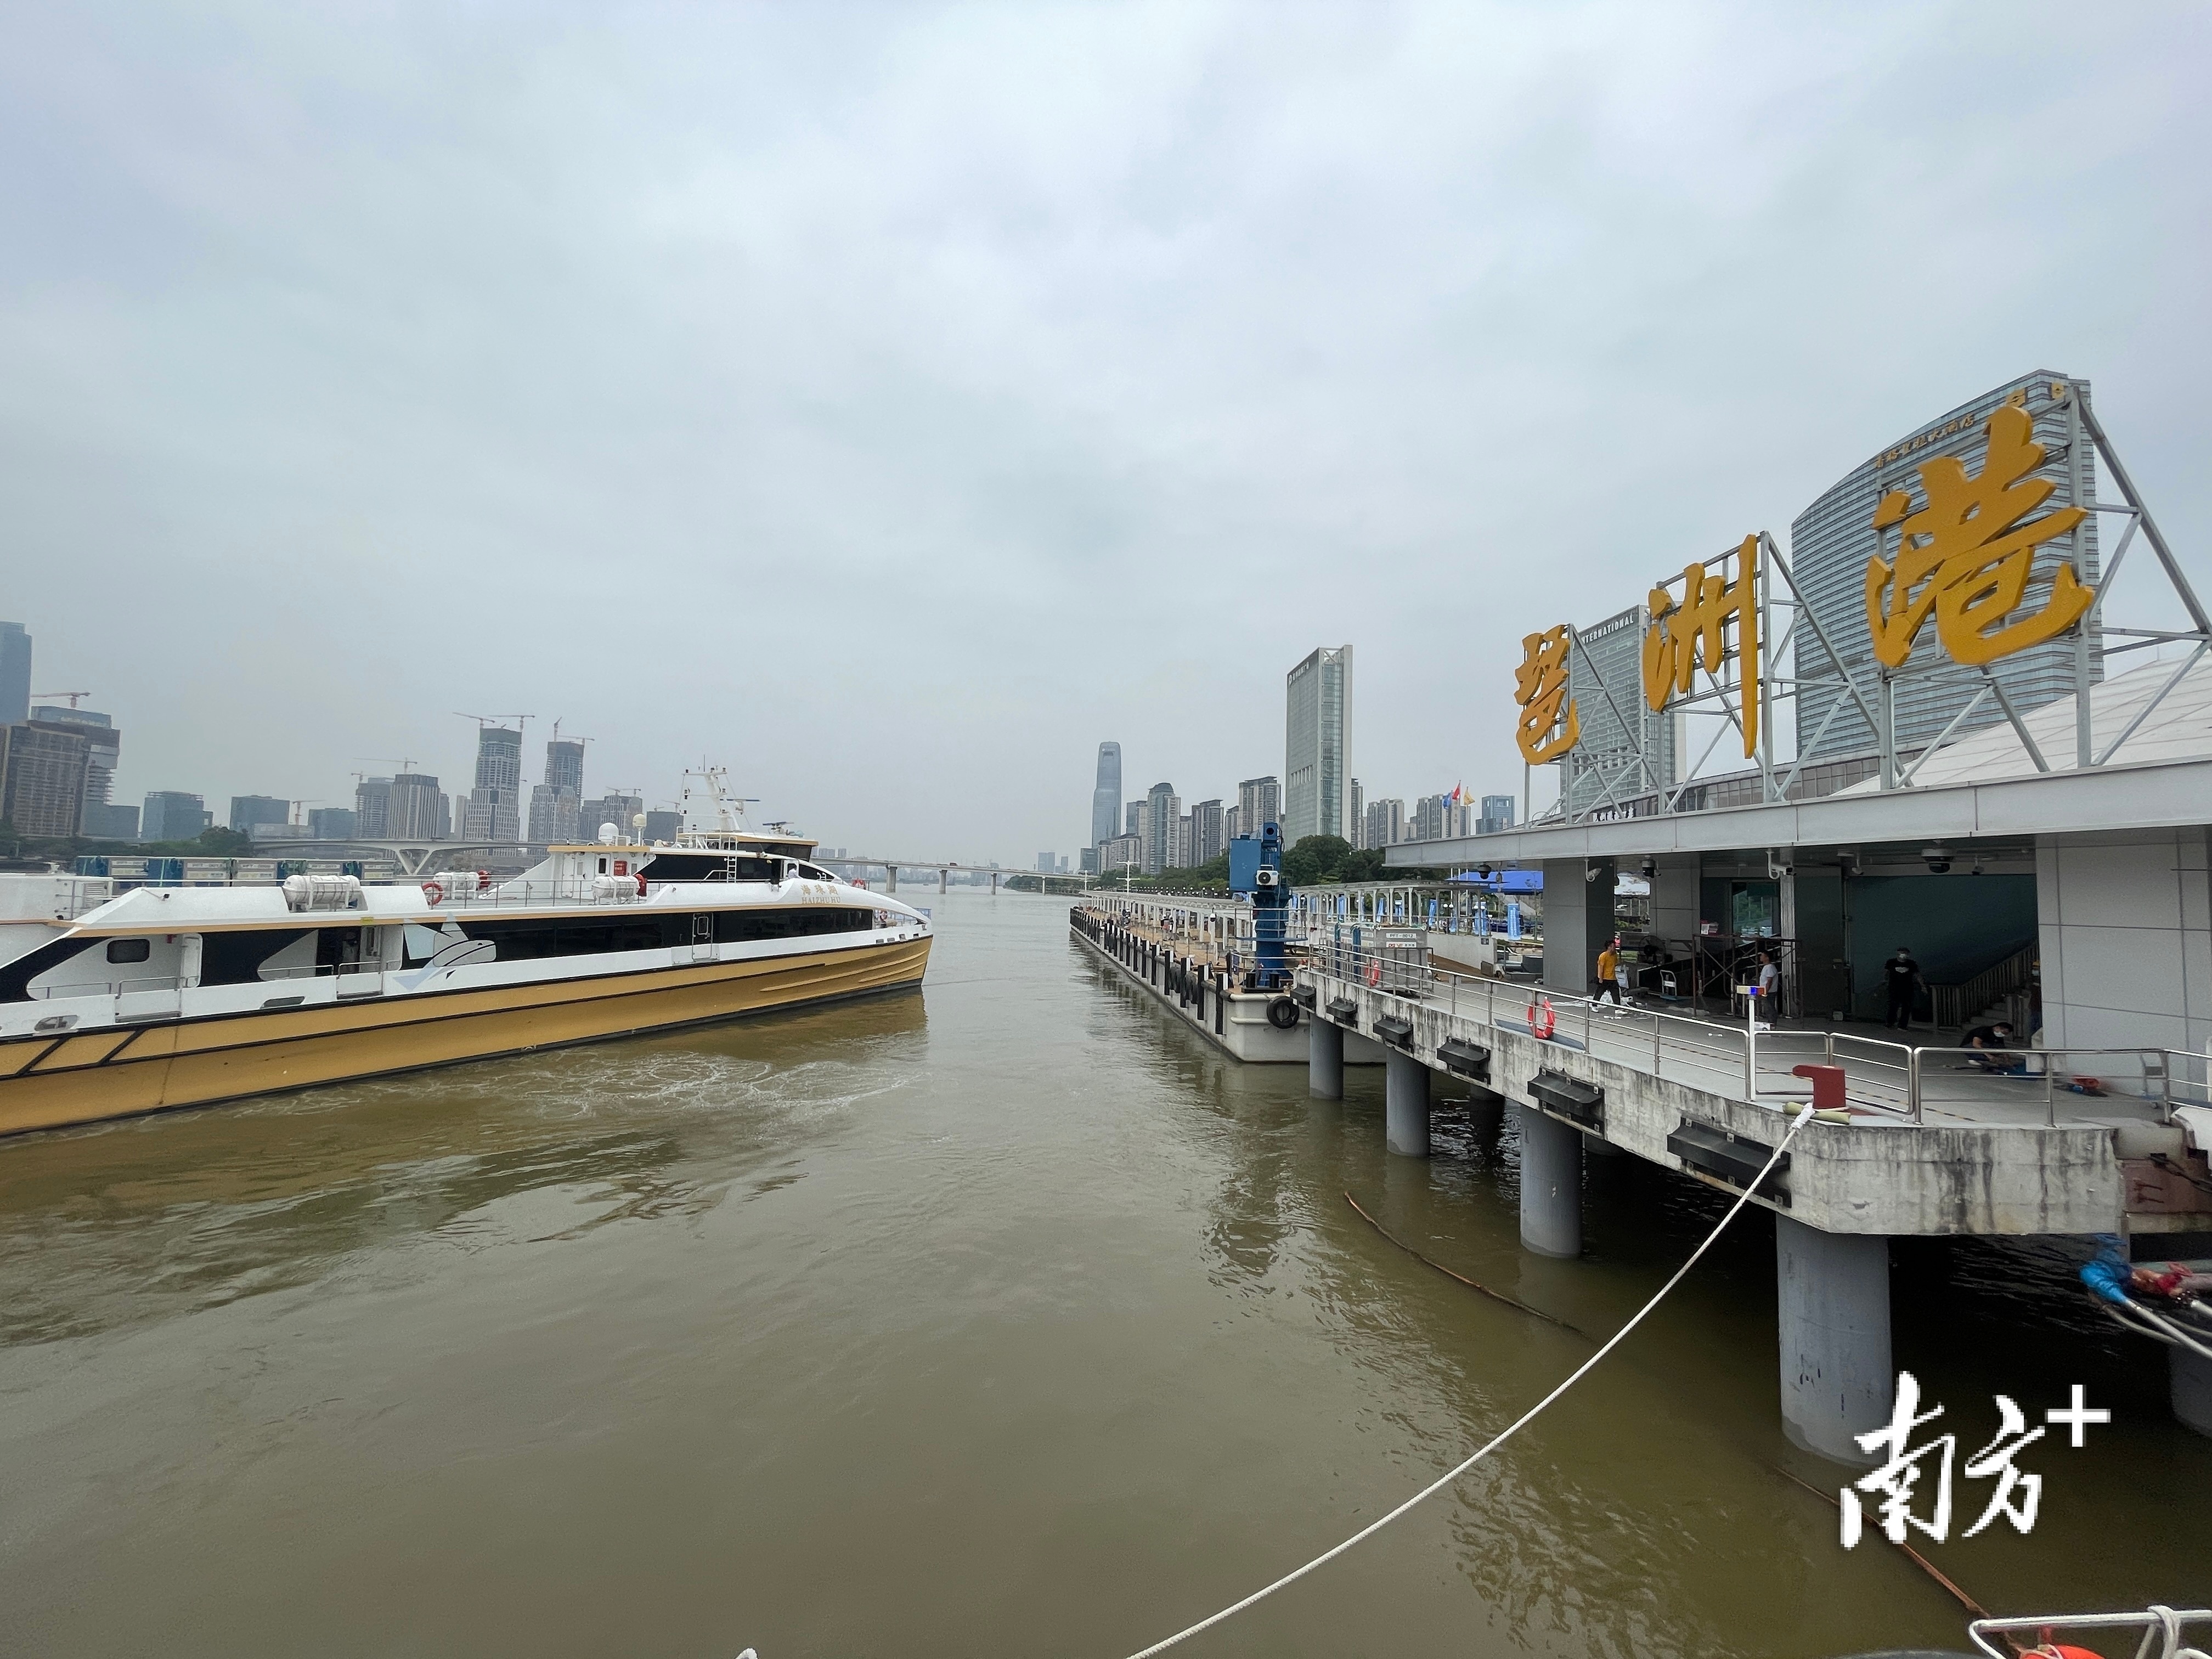 高速碳纤维客船“ 海珠湖 ”号驶离琶洲港客运码头。